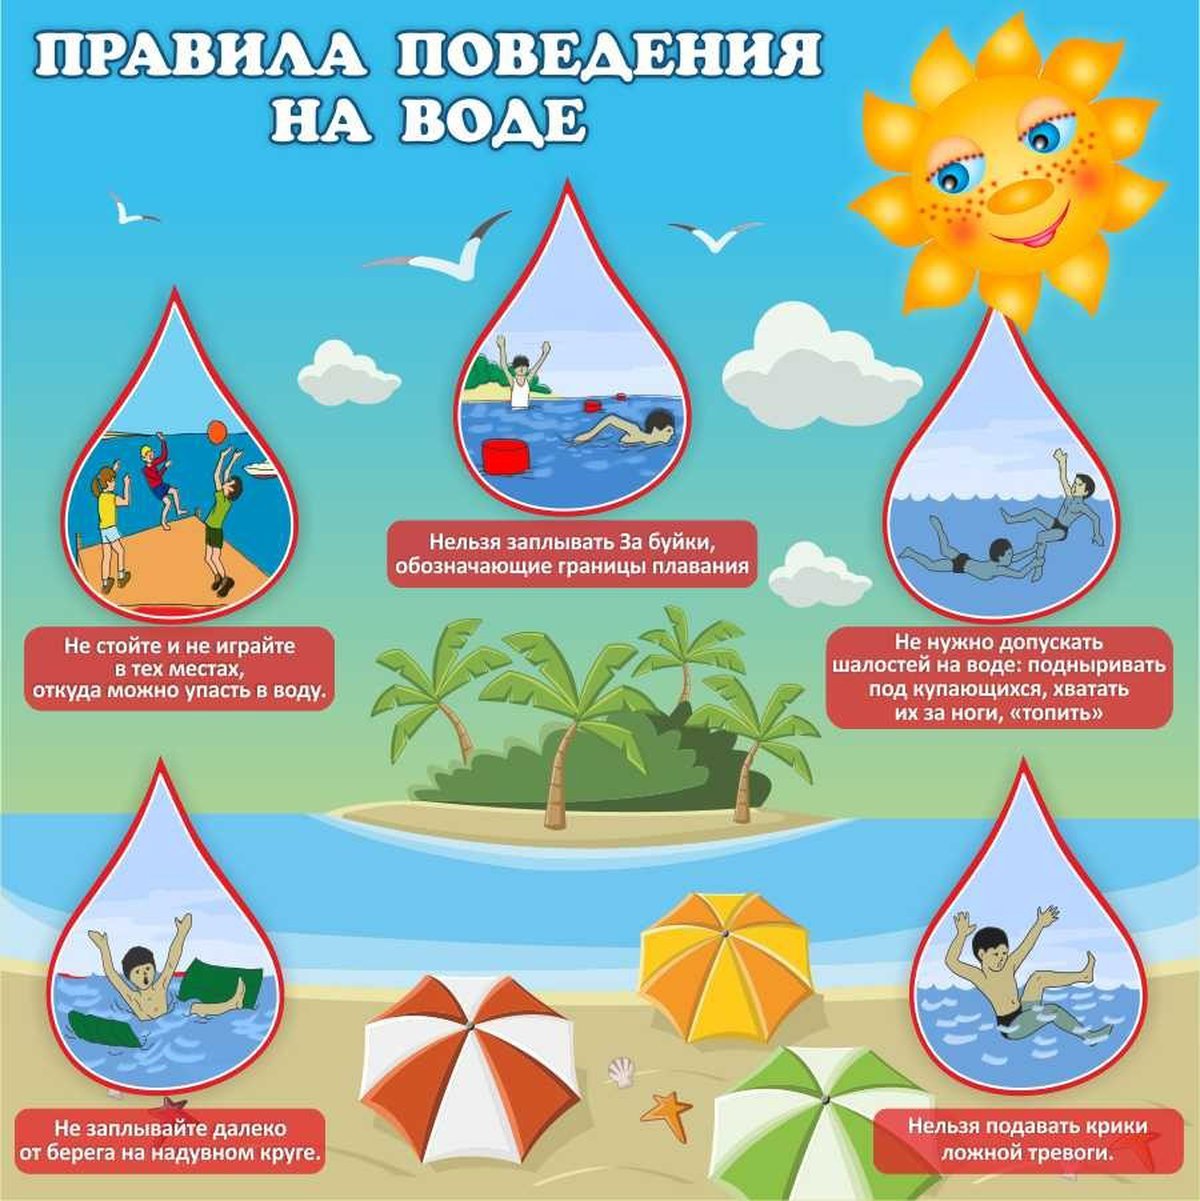 Правила поведения на летнем водоеме